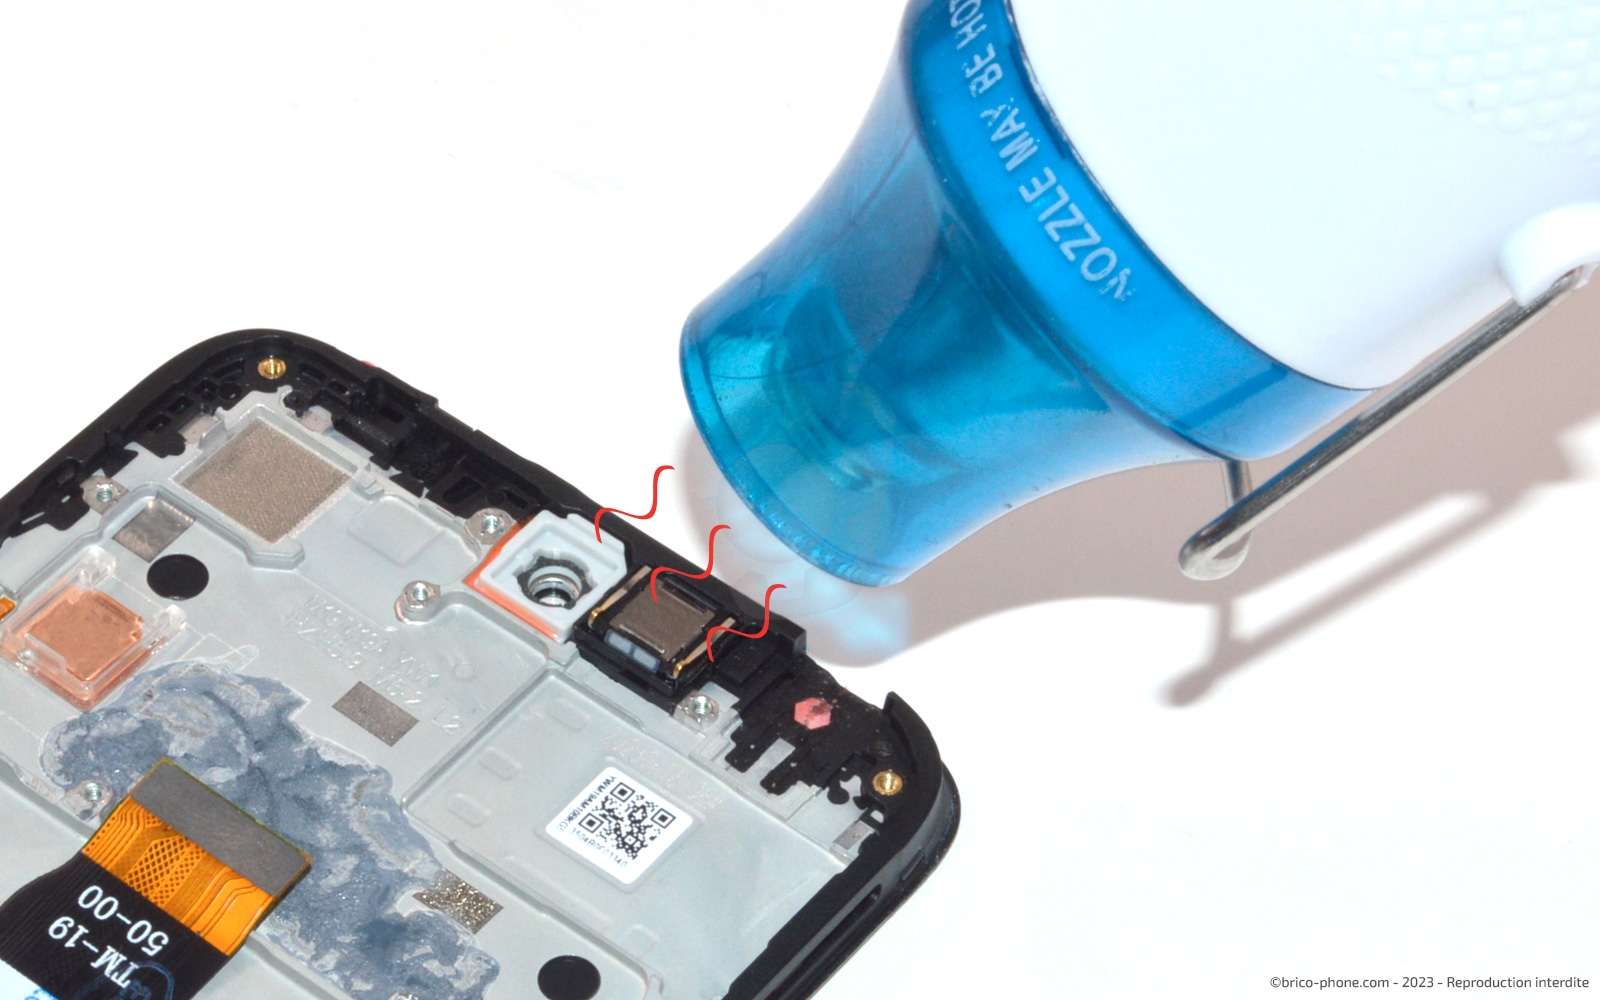 Nintendo Switch OLED : ne retirez surtout pas le film de protection, vous  pourriez briser l'écran !